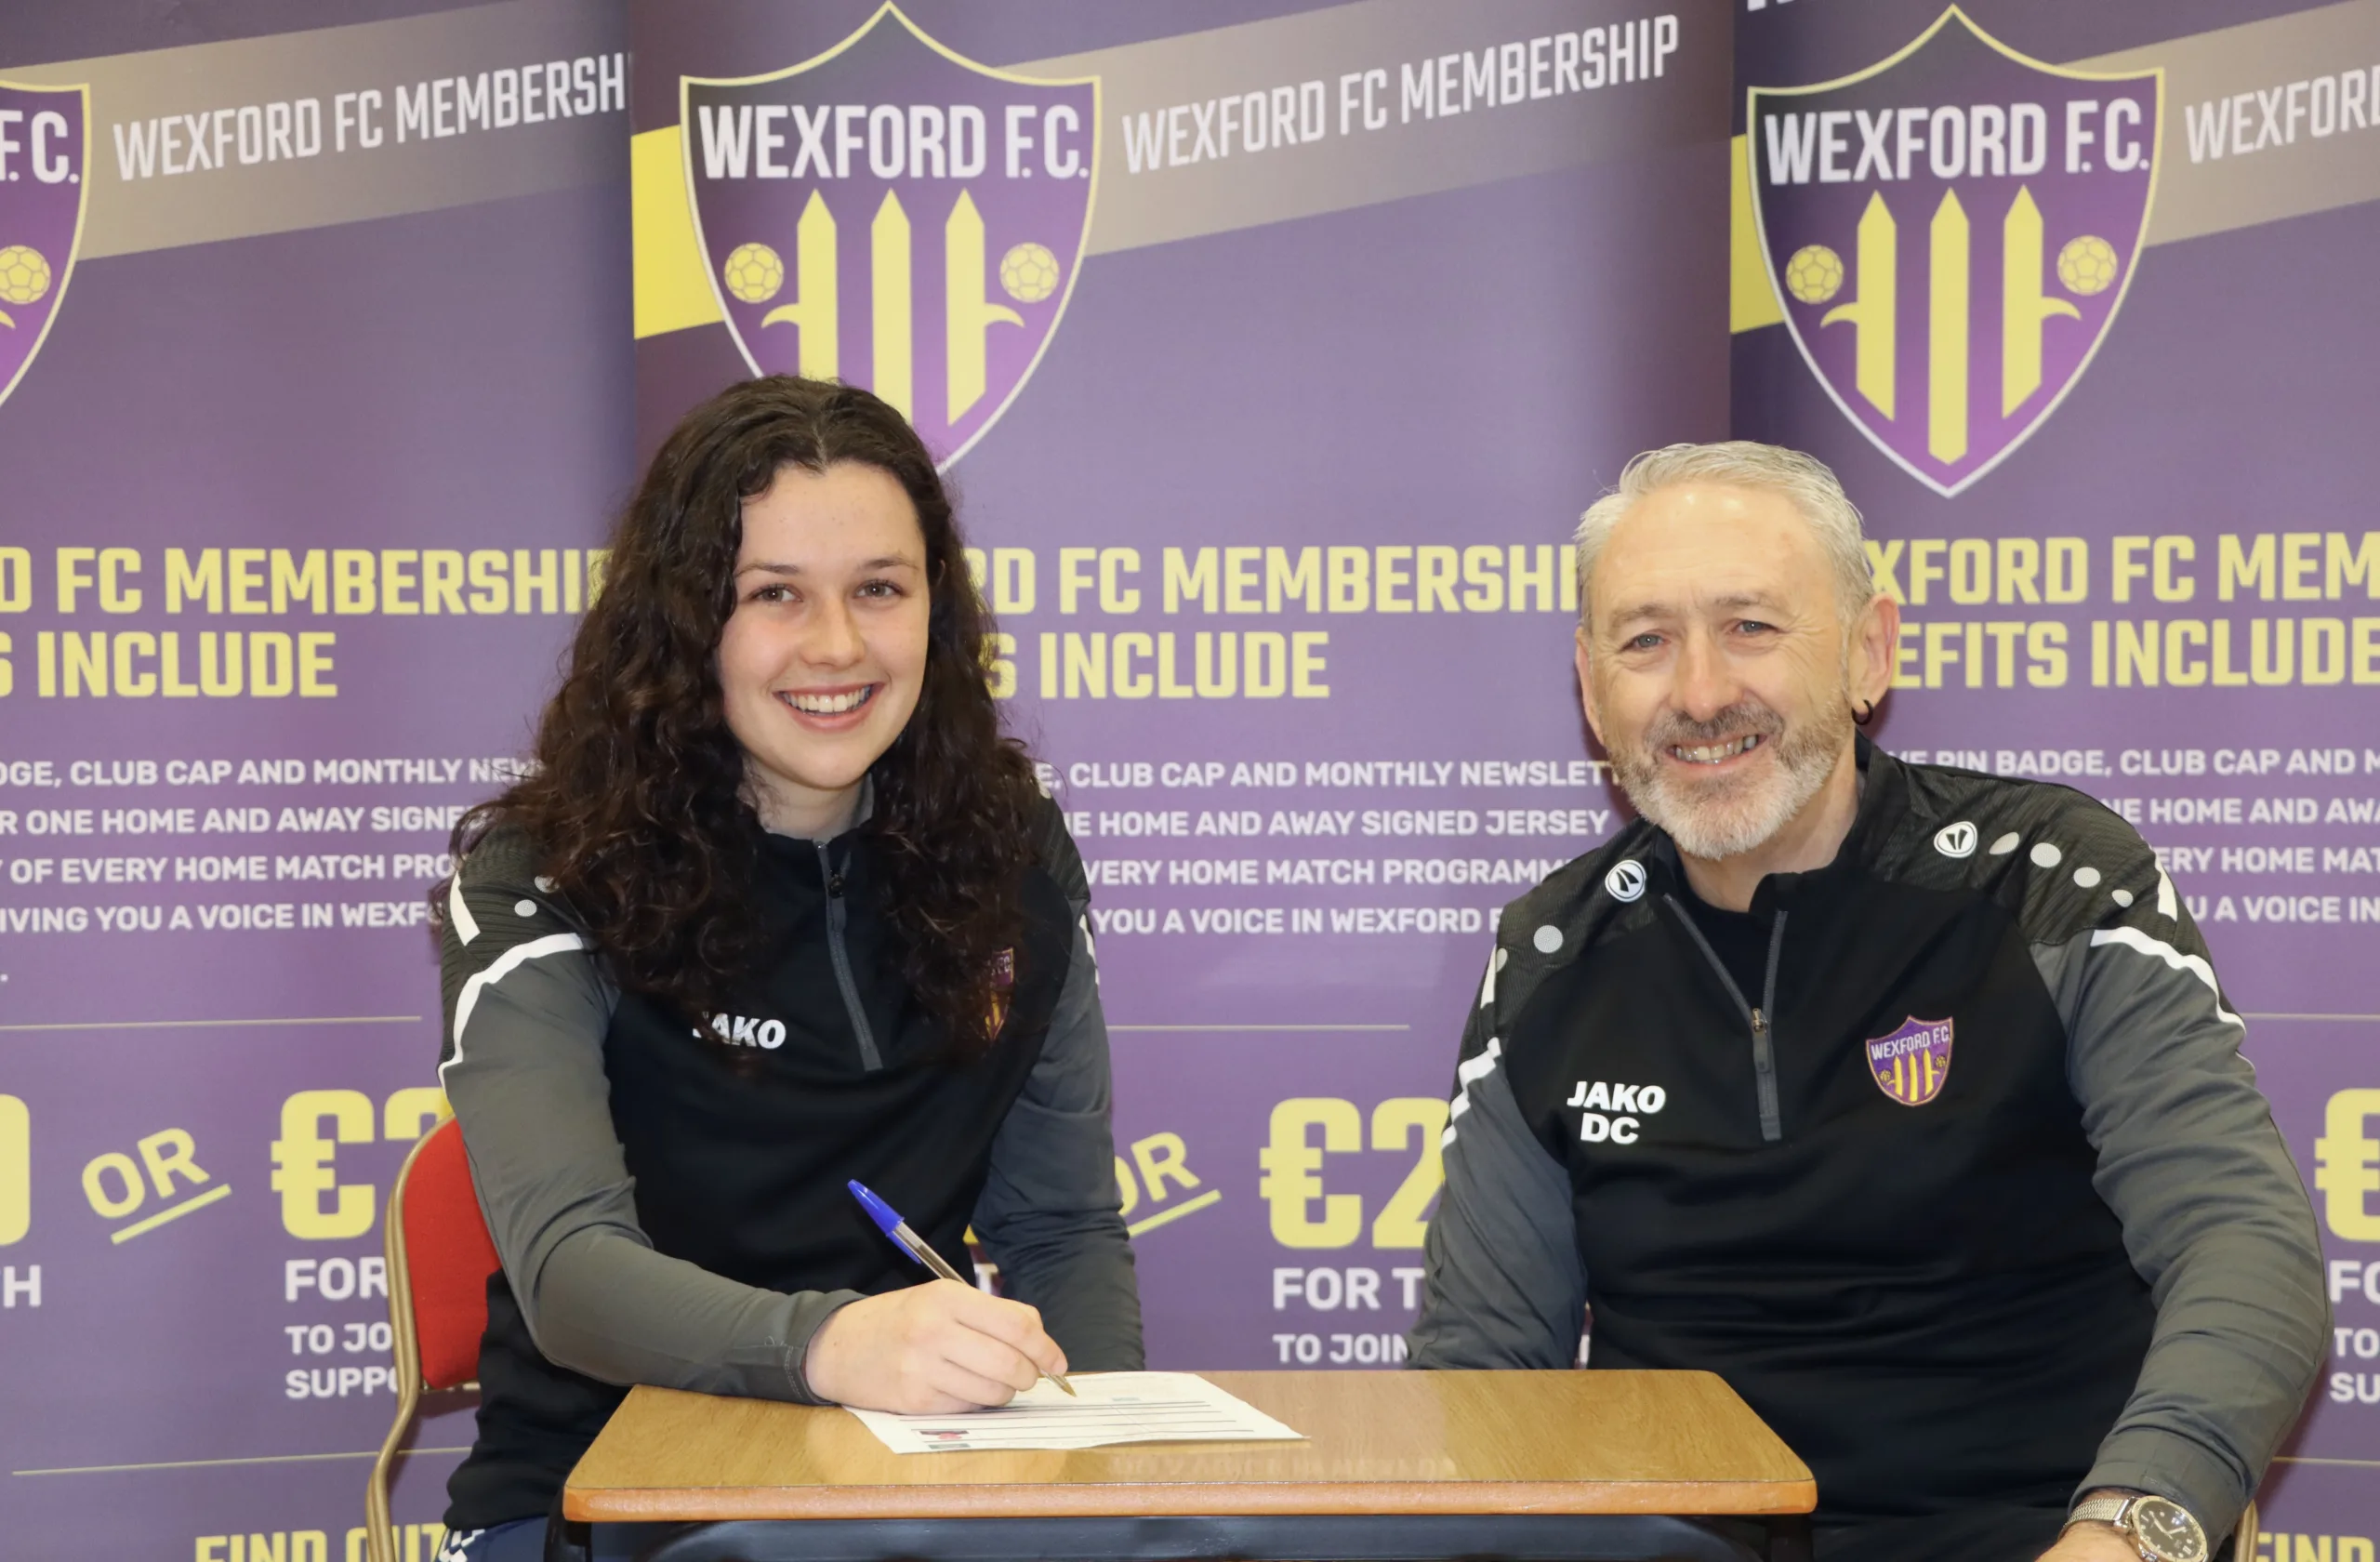 Della pictured with Wexford FC Women Club Secretary Dave Cassin